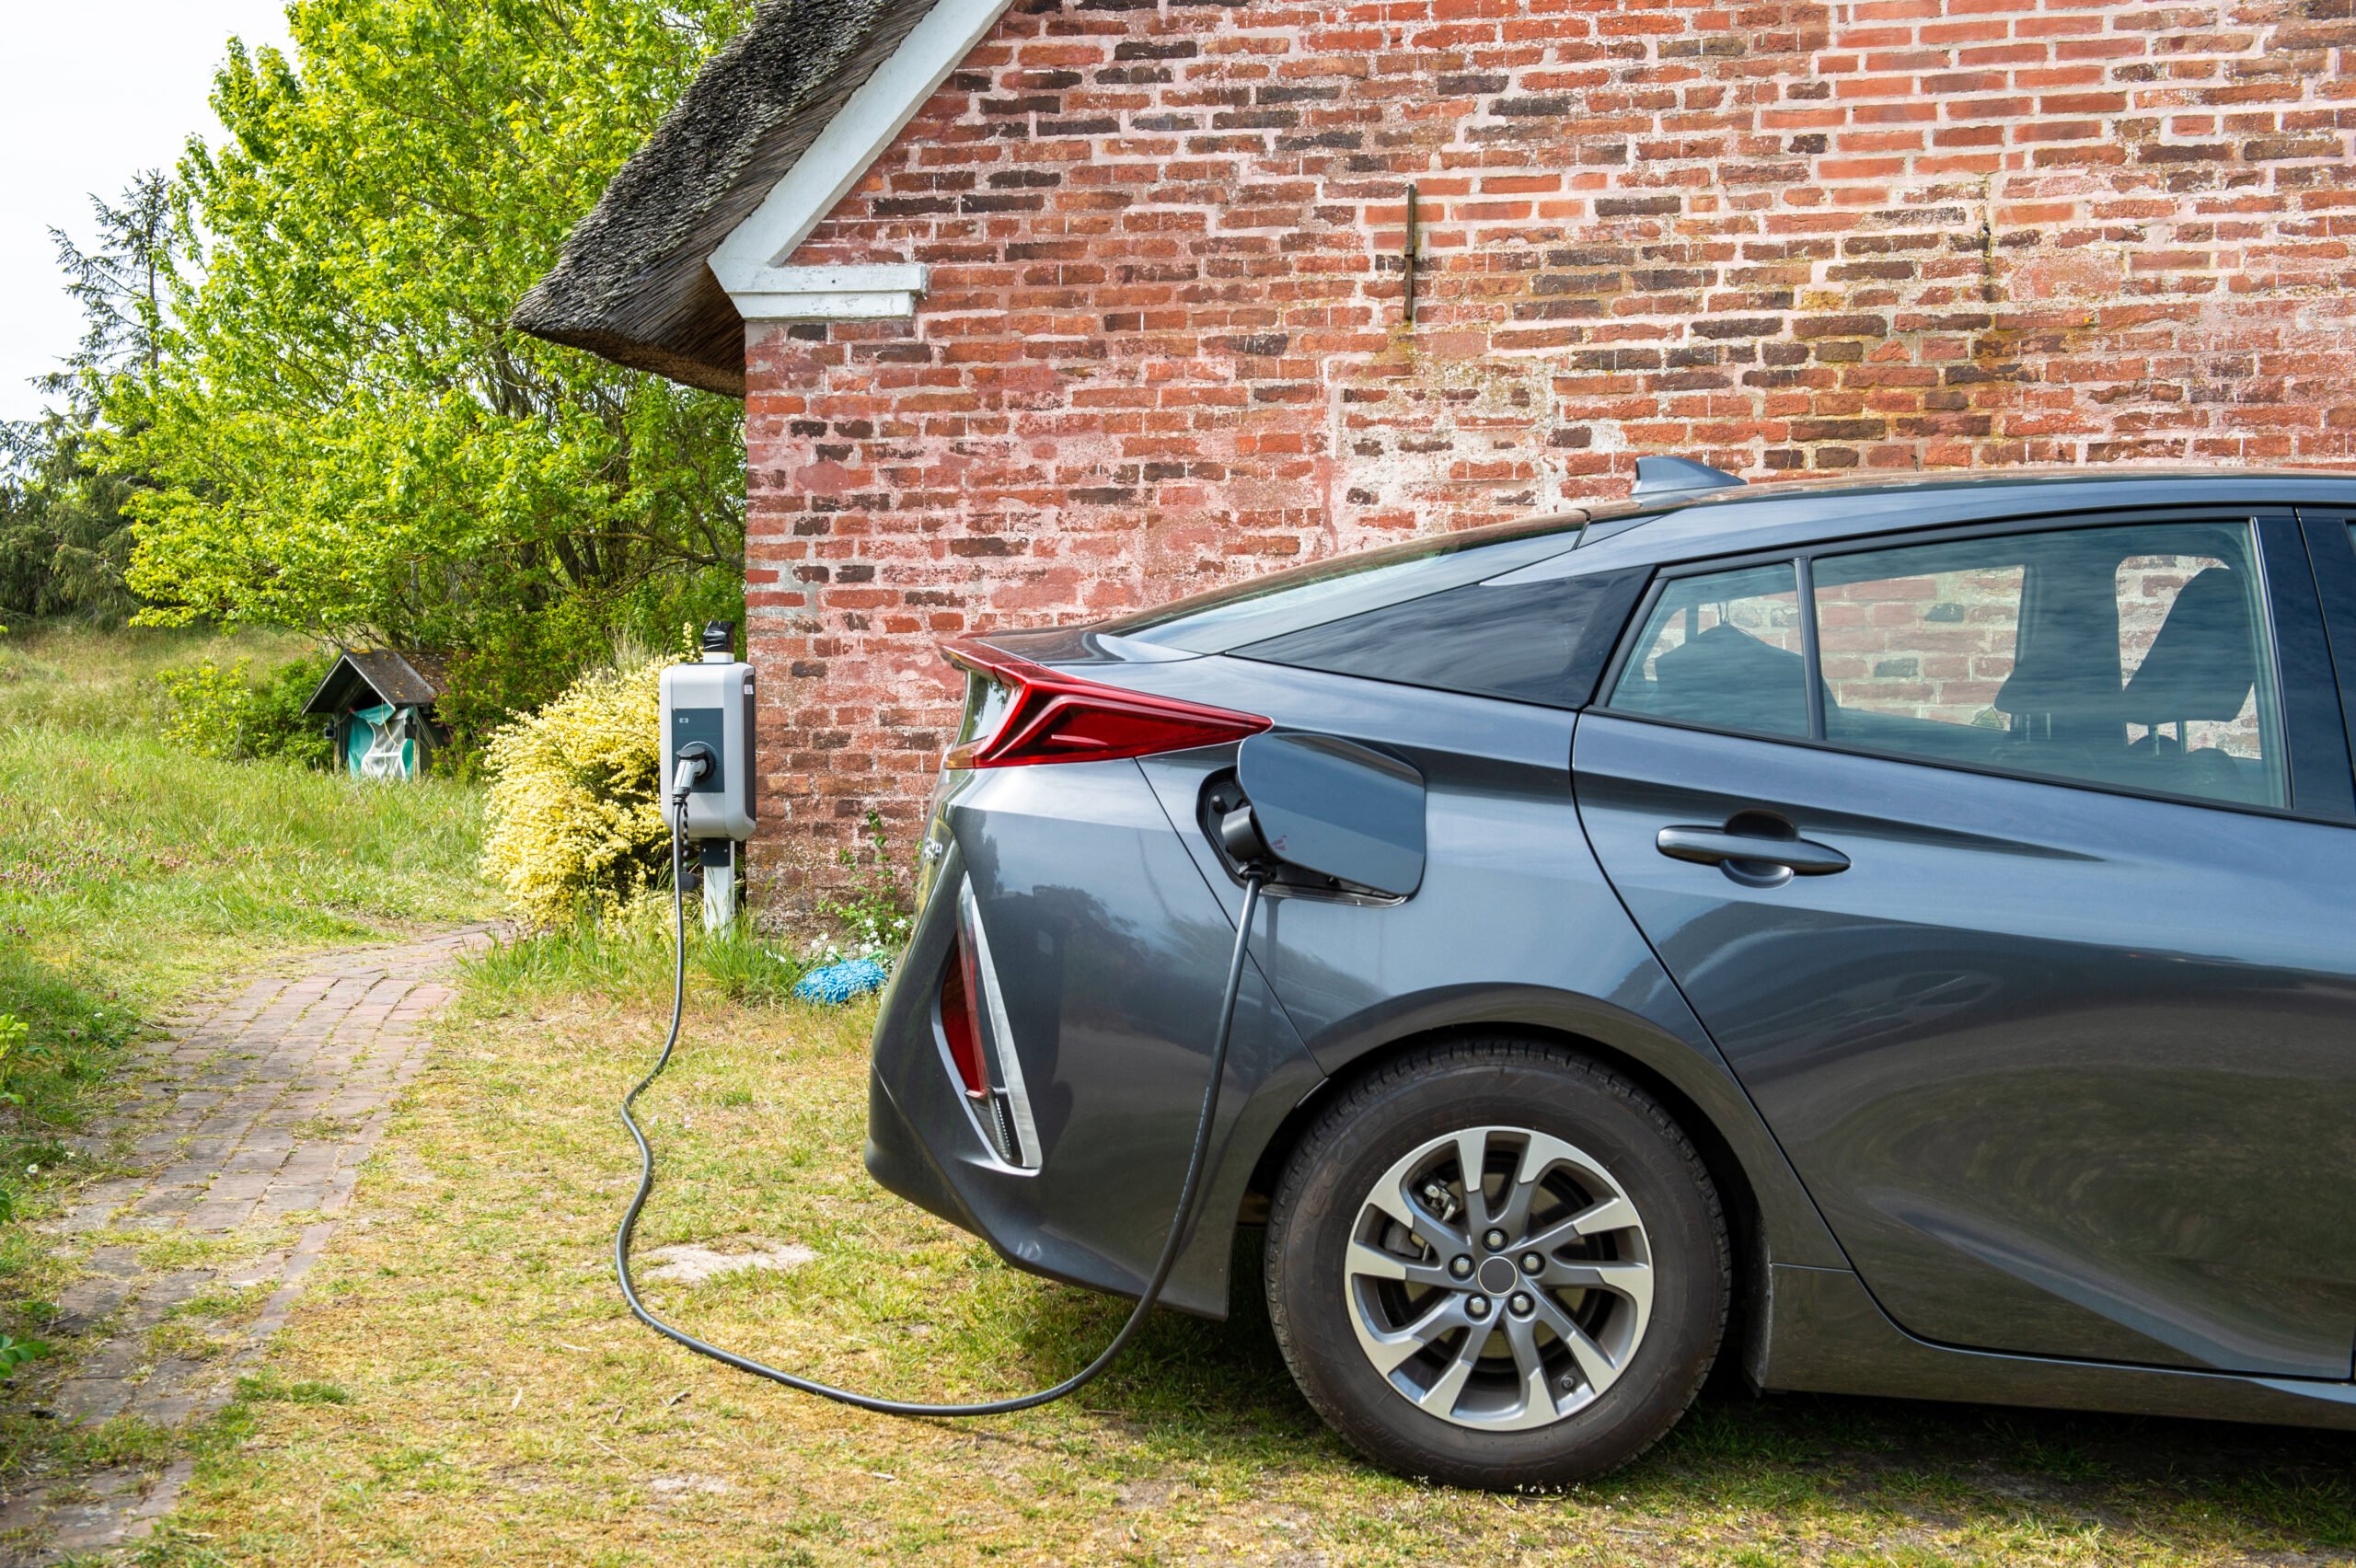 Samochód elektryczny ładuje baterię przy domowej stacji ładowania, zaparkowany obok ceglanej stodoły.